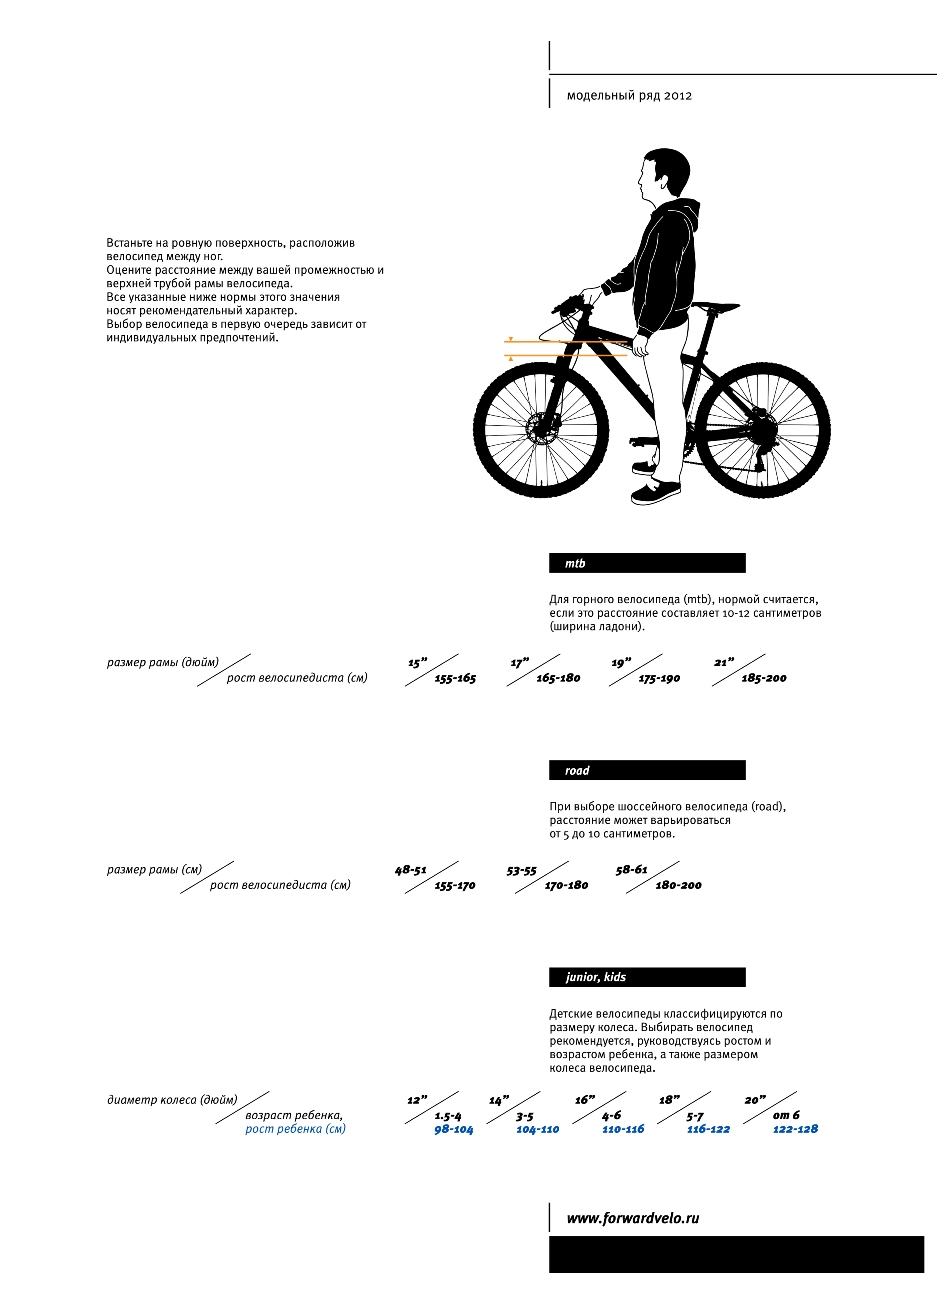 26 дюймов колеса велосипеда на какой рост. Размер рамы велосипеда по росту женщина. Таблица выбора велосипеда по росту и весу. Какой размер рамы выбрать для велосипеда рост 182. Схема подбора велосипеда по росту таблица.